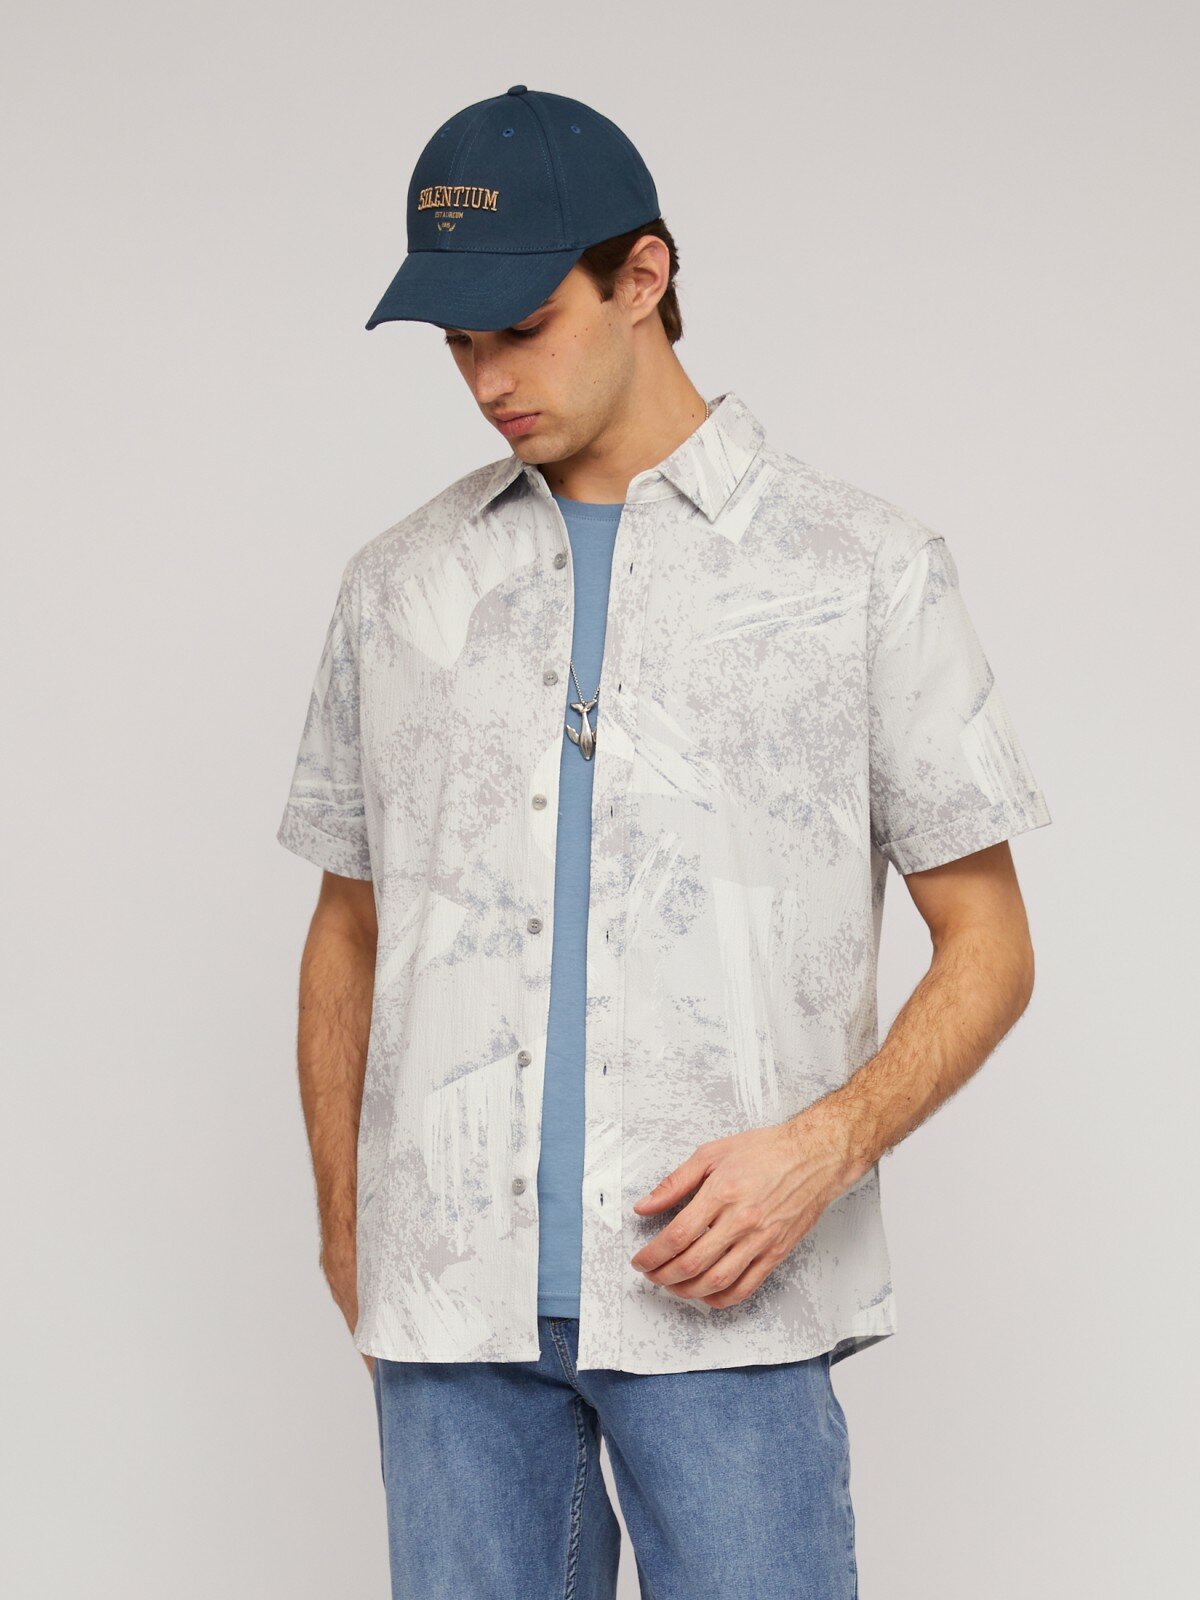 Рубашка из хлопка с принтом и с коротким рукавом цвет Светло-серый размер M 014232291091